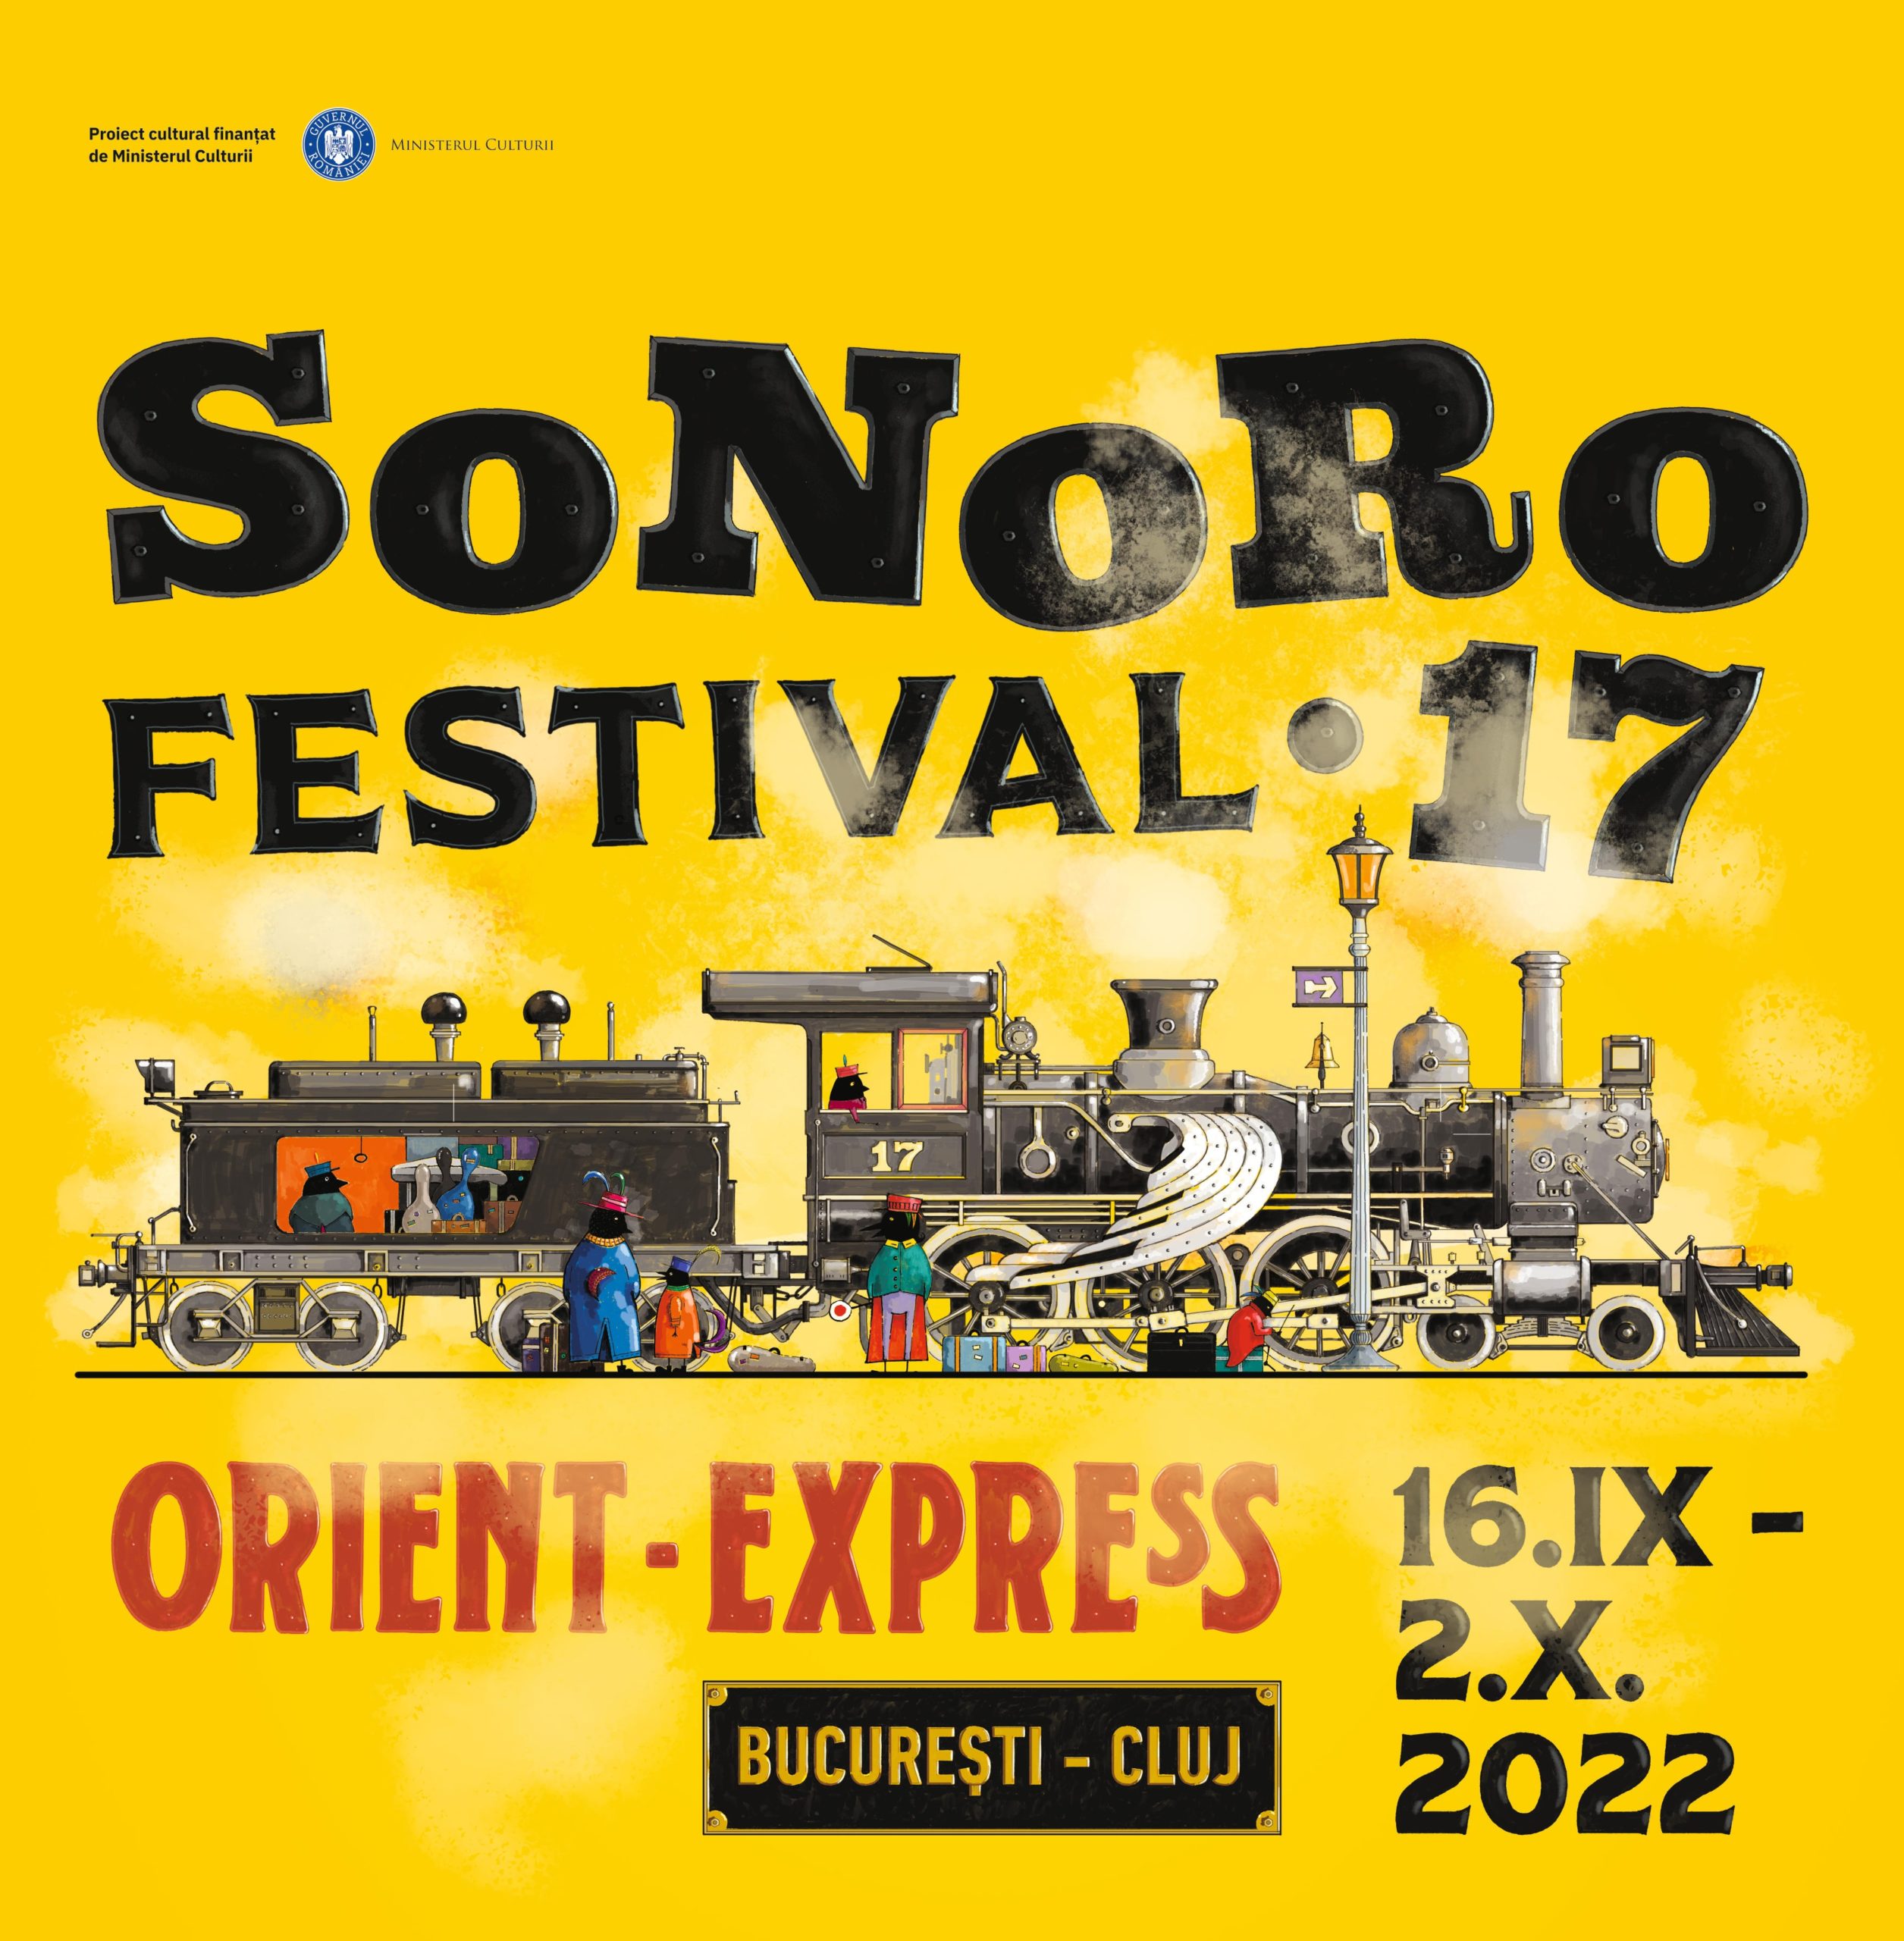 SoNoRo Festival XVII 2022 Orient Express 